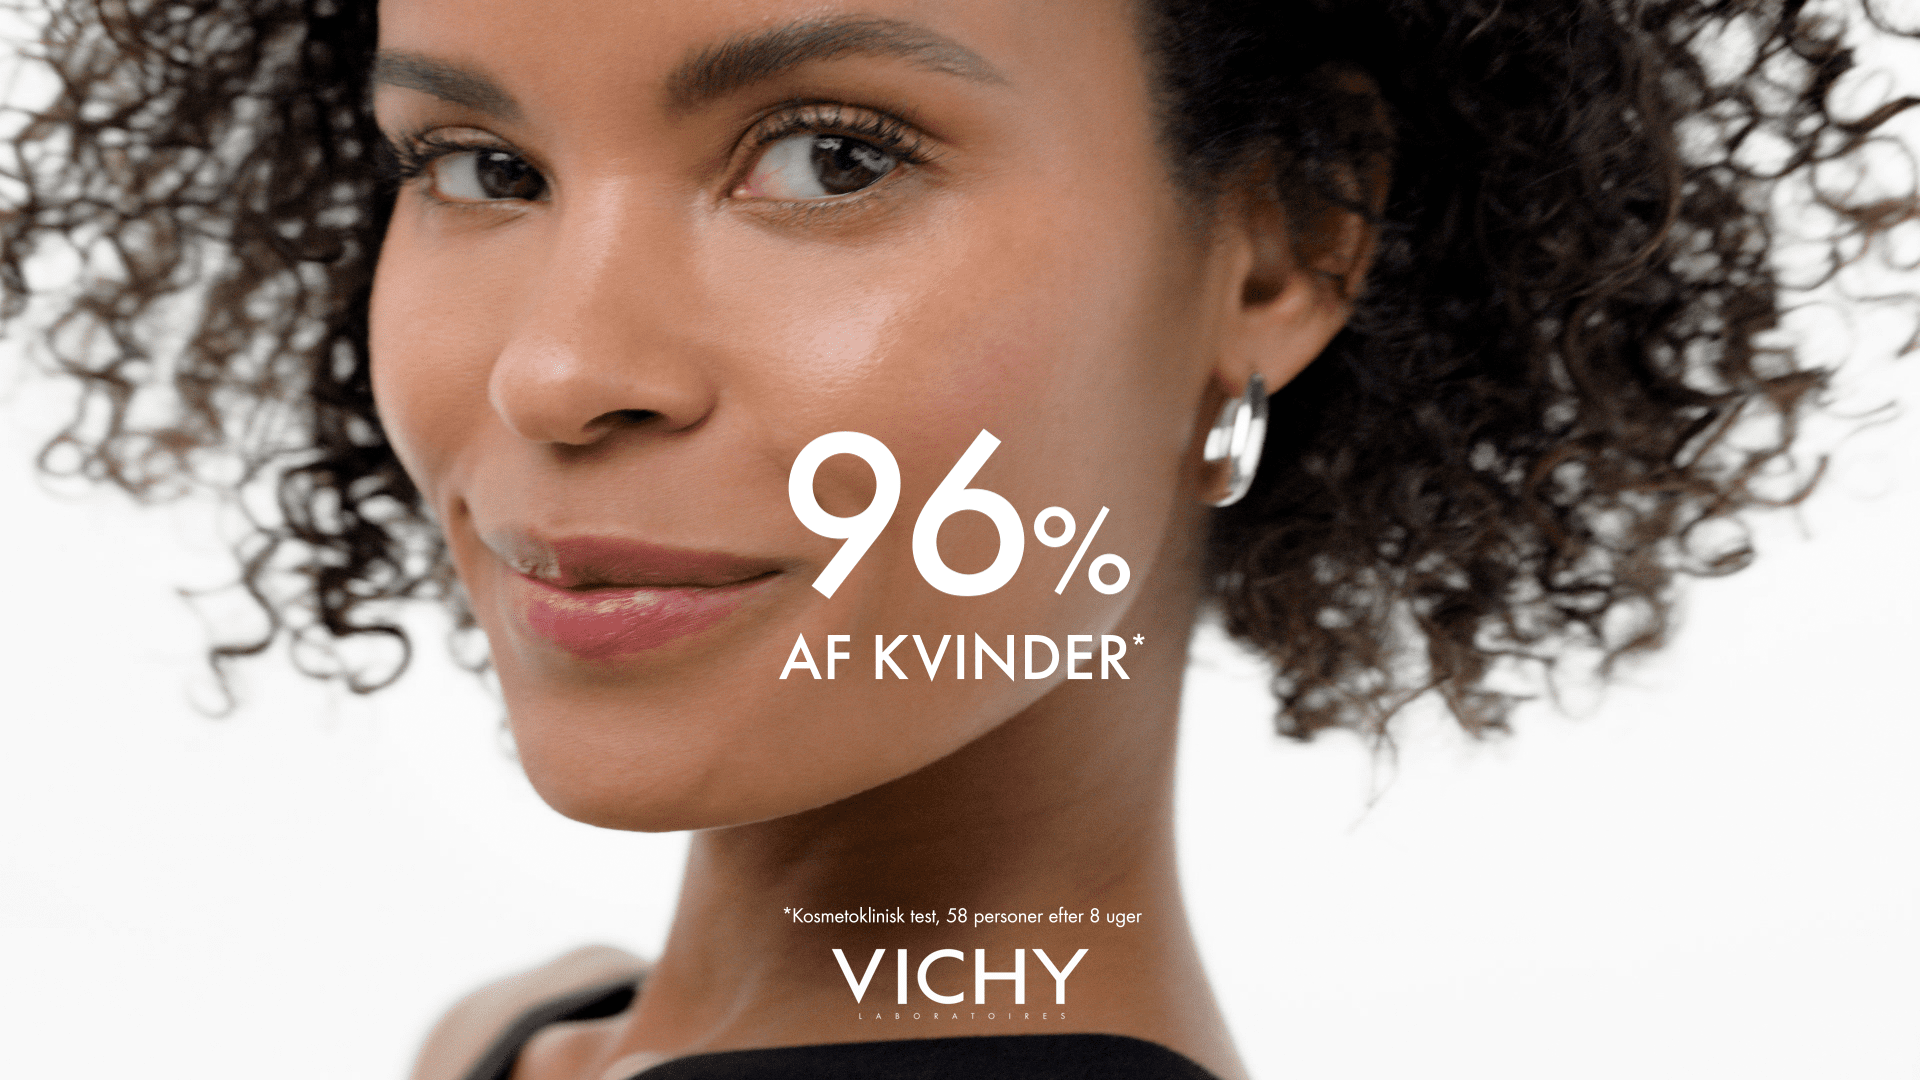 Vichy Commercial Image Twenty Studios